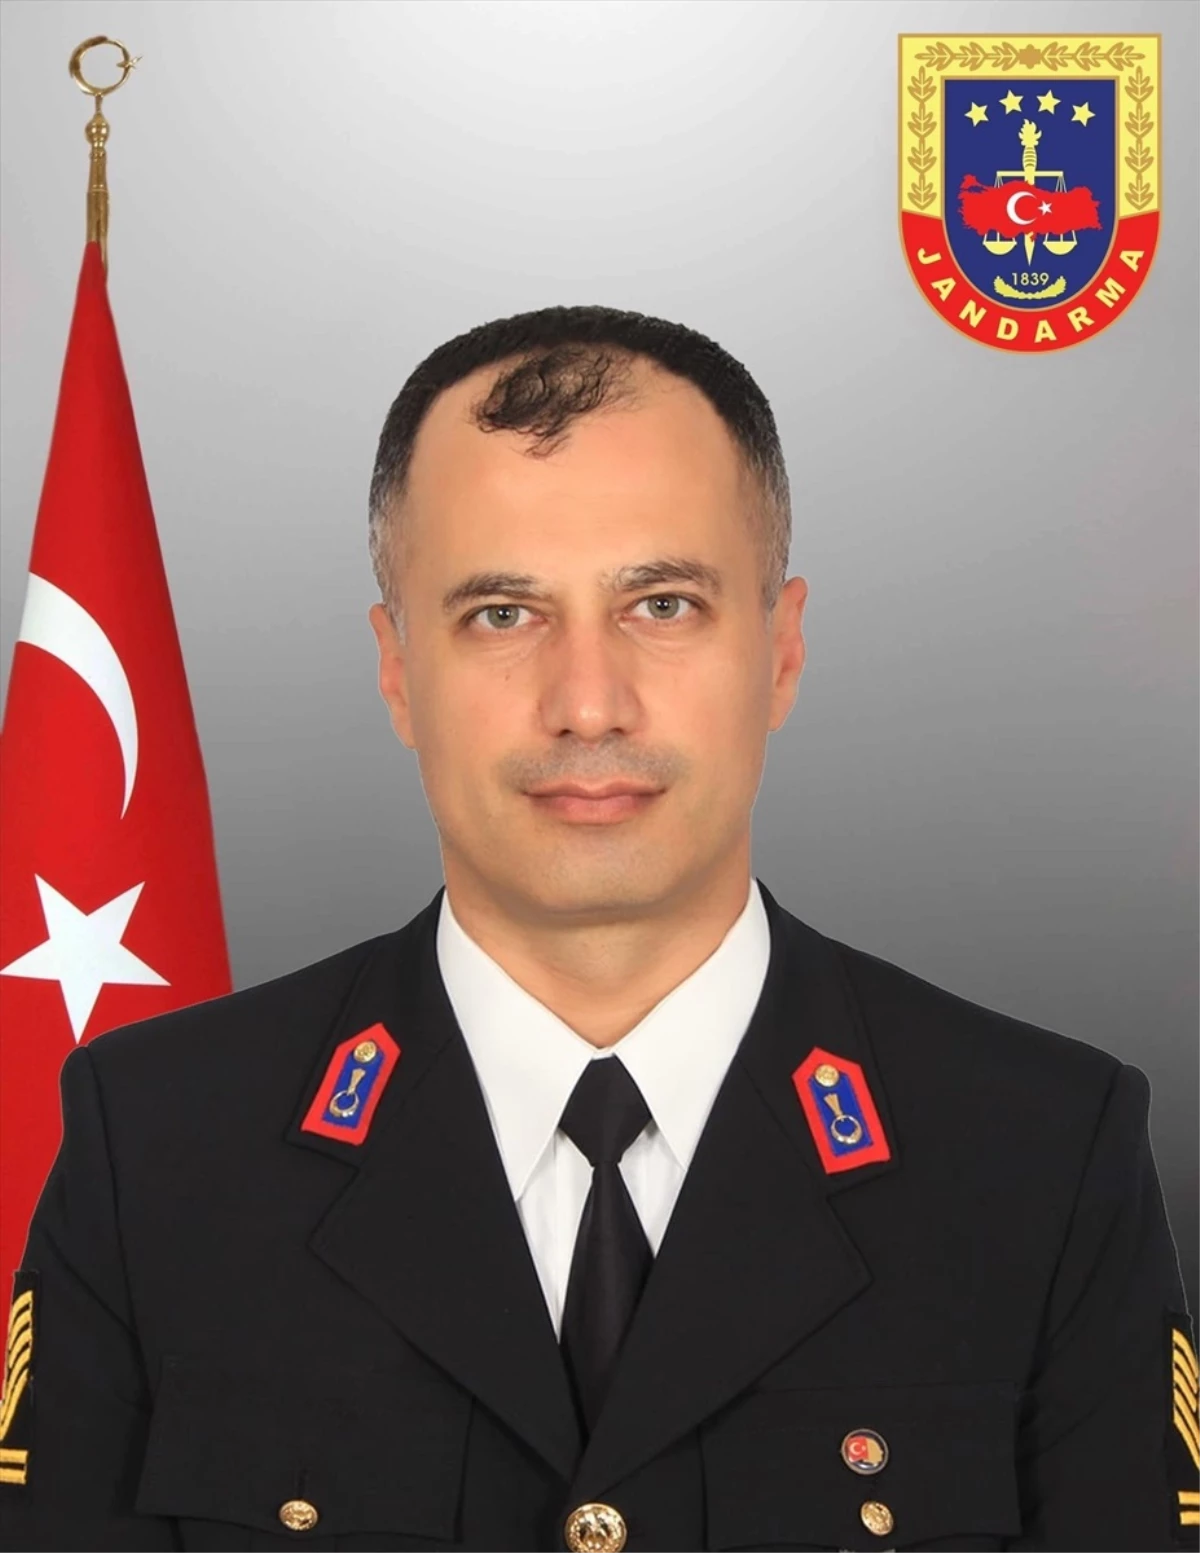 Erzurum İl Jandarma Komutanlığı'nda görevli şehit Jandarma Astsubay Kıdemli Başçavuş Mustafa Yaşar için tören düzenlendi